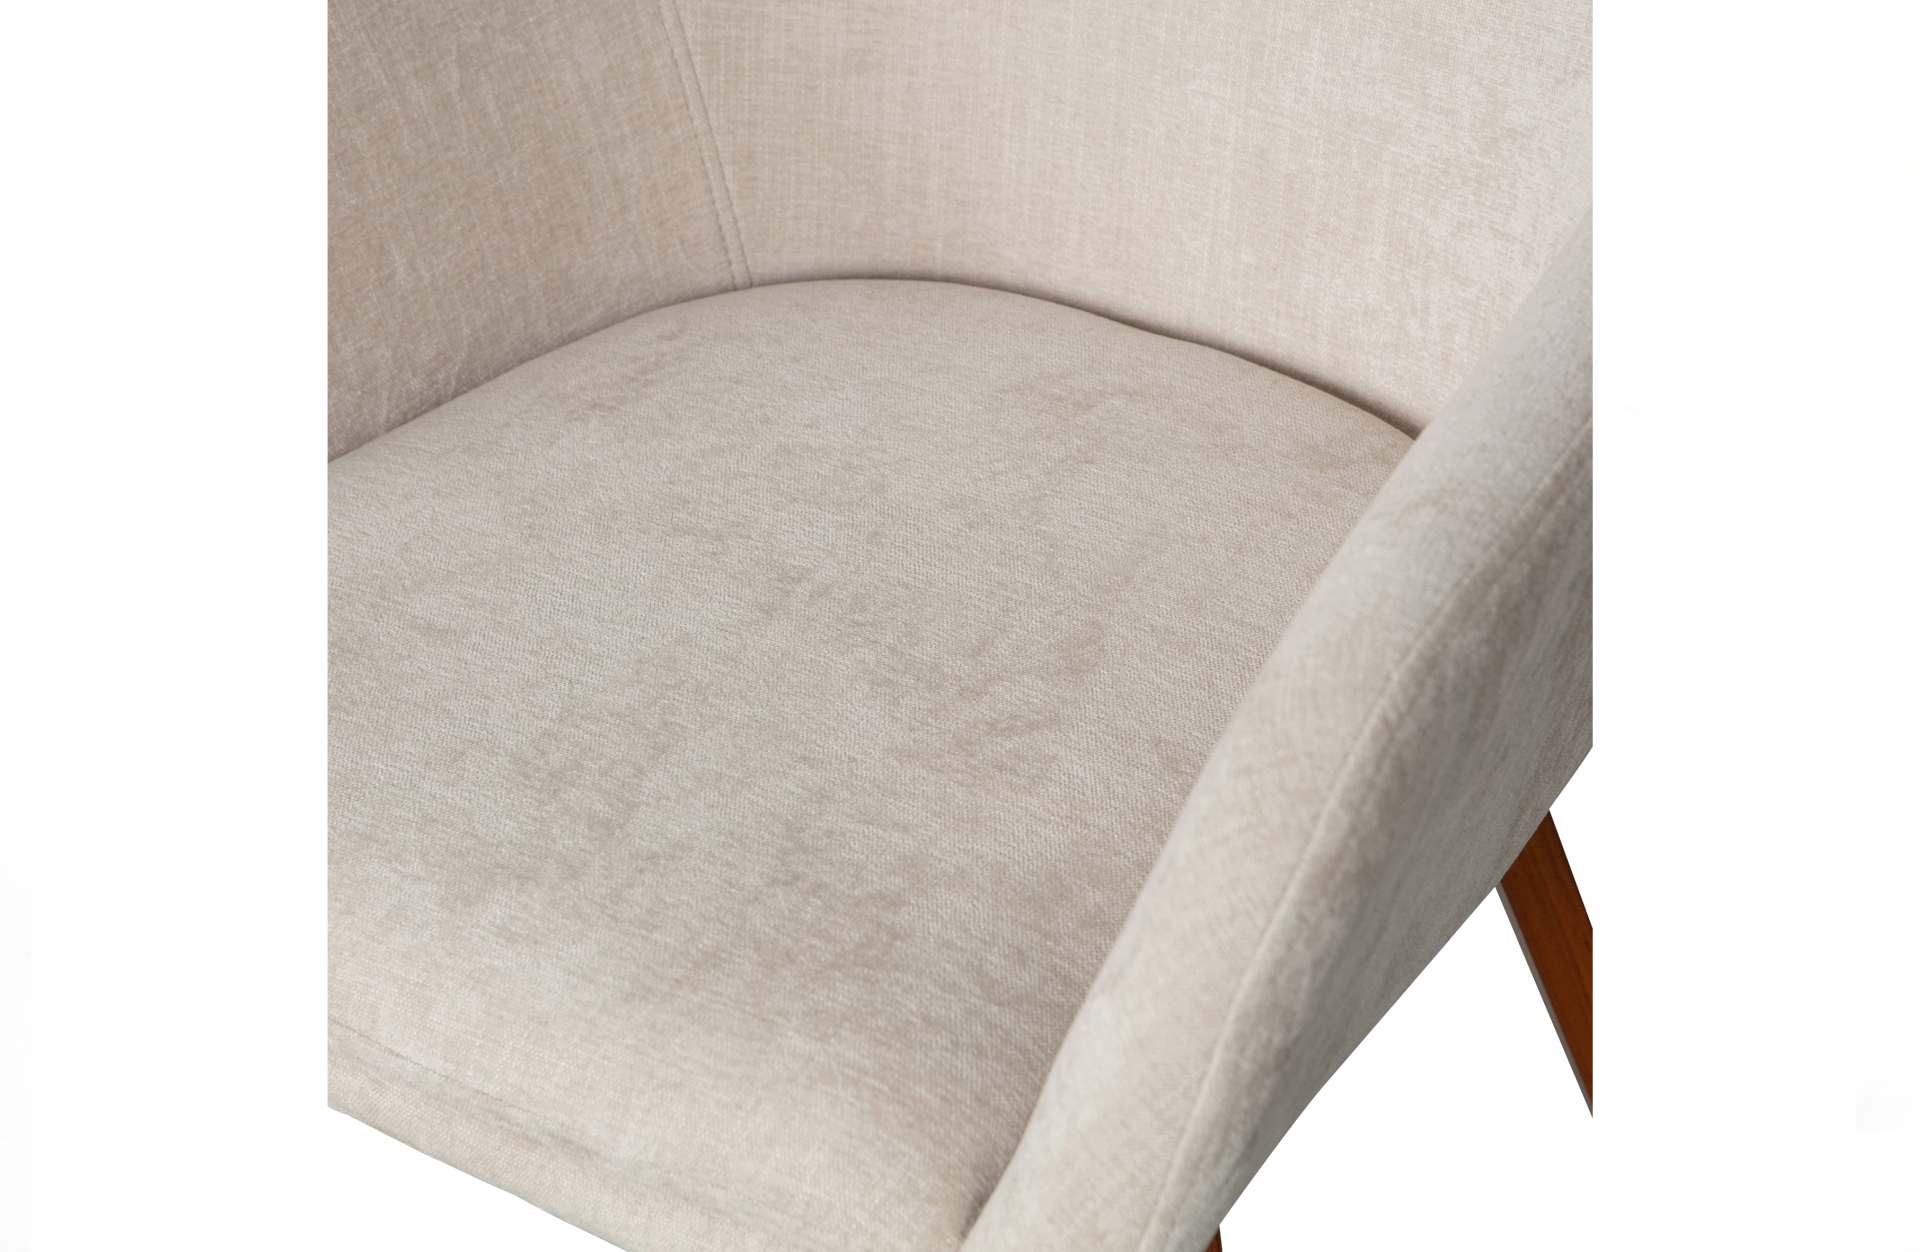 Der Esszimmerstuhl Base überzeugt mit seinem klassischen Design. Gefertigt wurde er aus Samt, welches einen Sand Farbton besitzt. Das Gestell ist aus Walnussfurnier und hat eine braune Farbe. Die Sitzhöhe beträgt 49 cm.